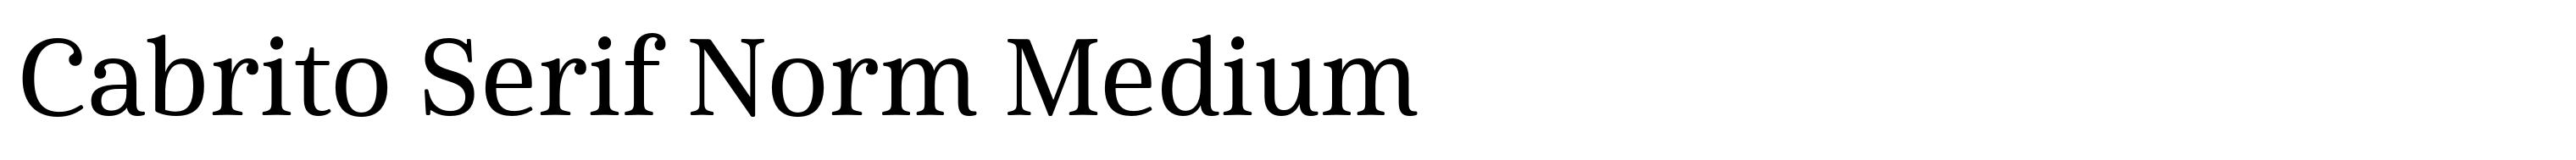 Cabrito Serif Norm Medium